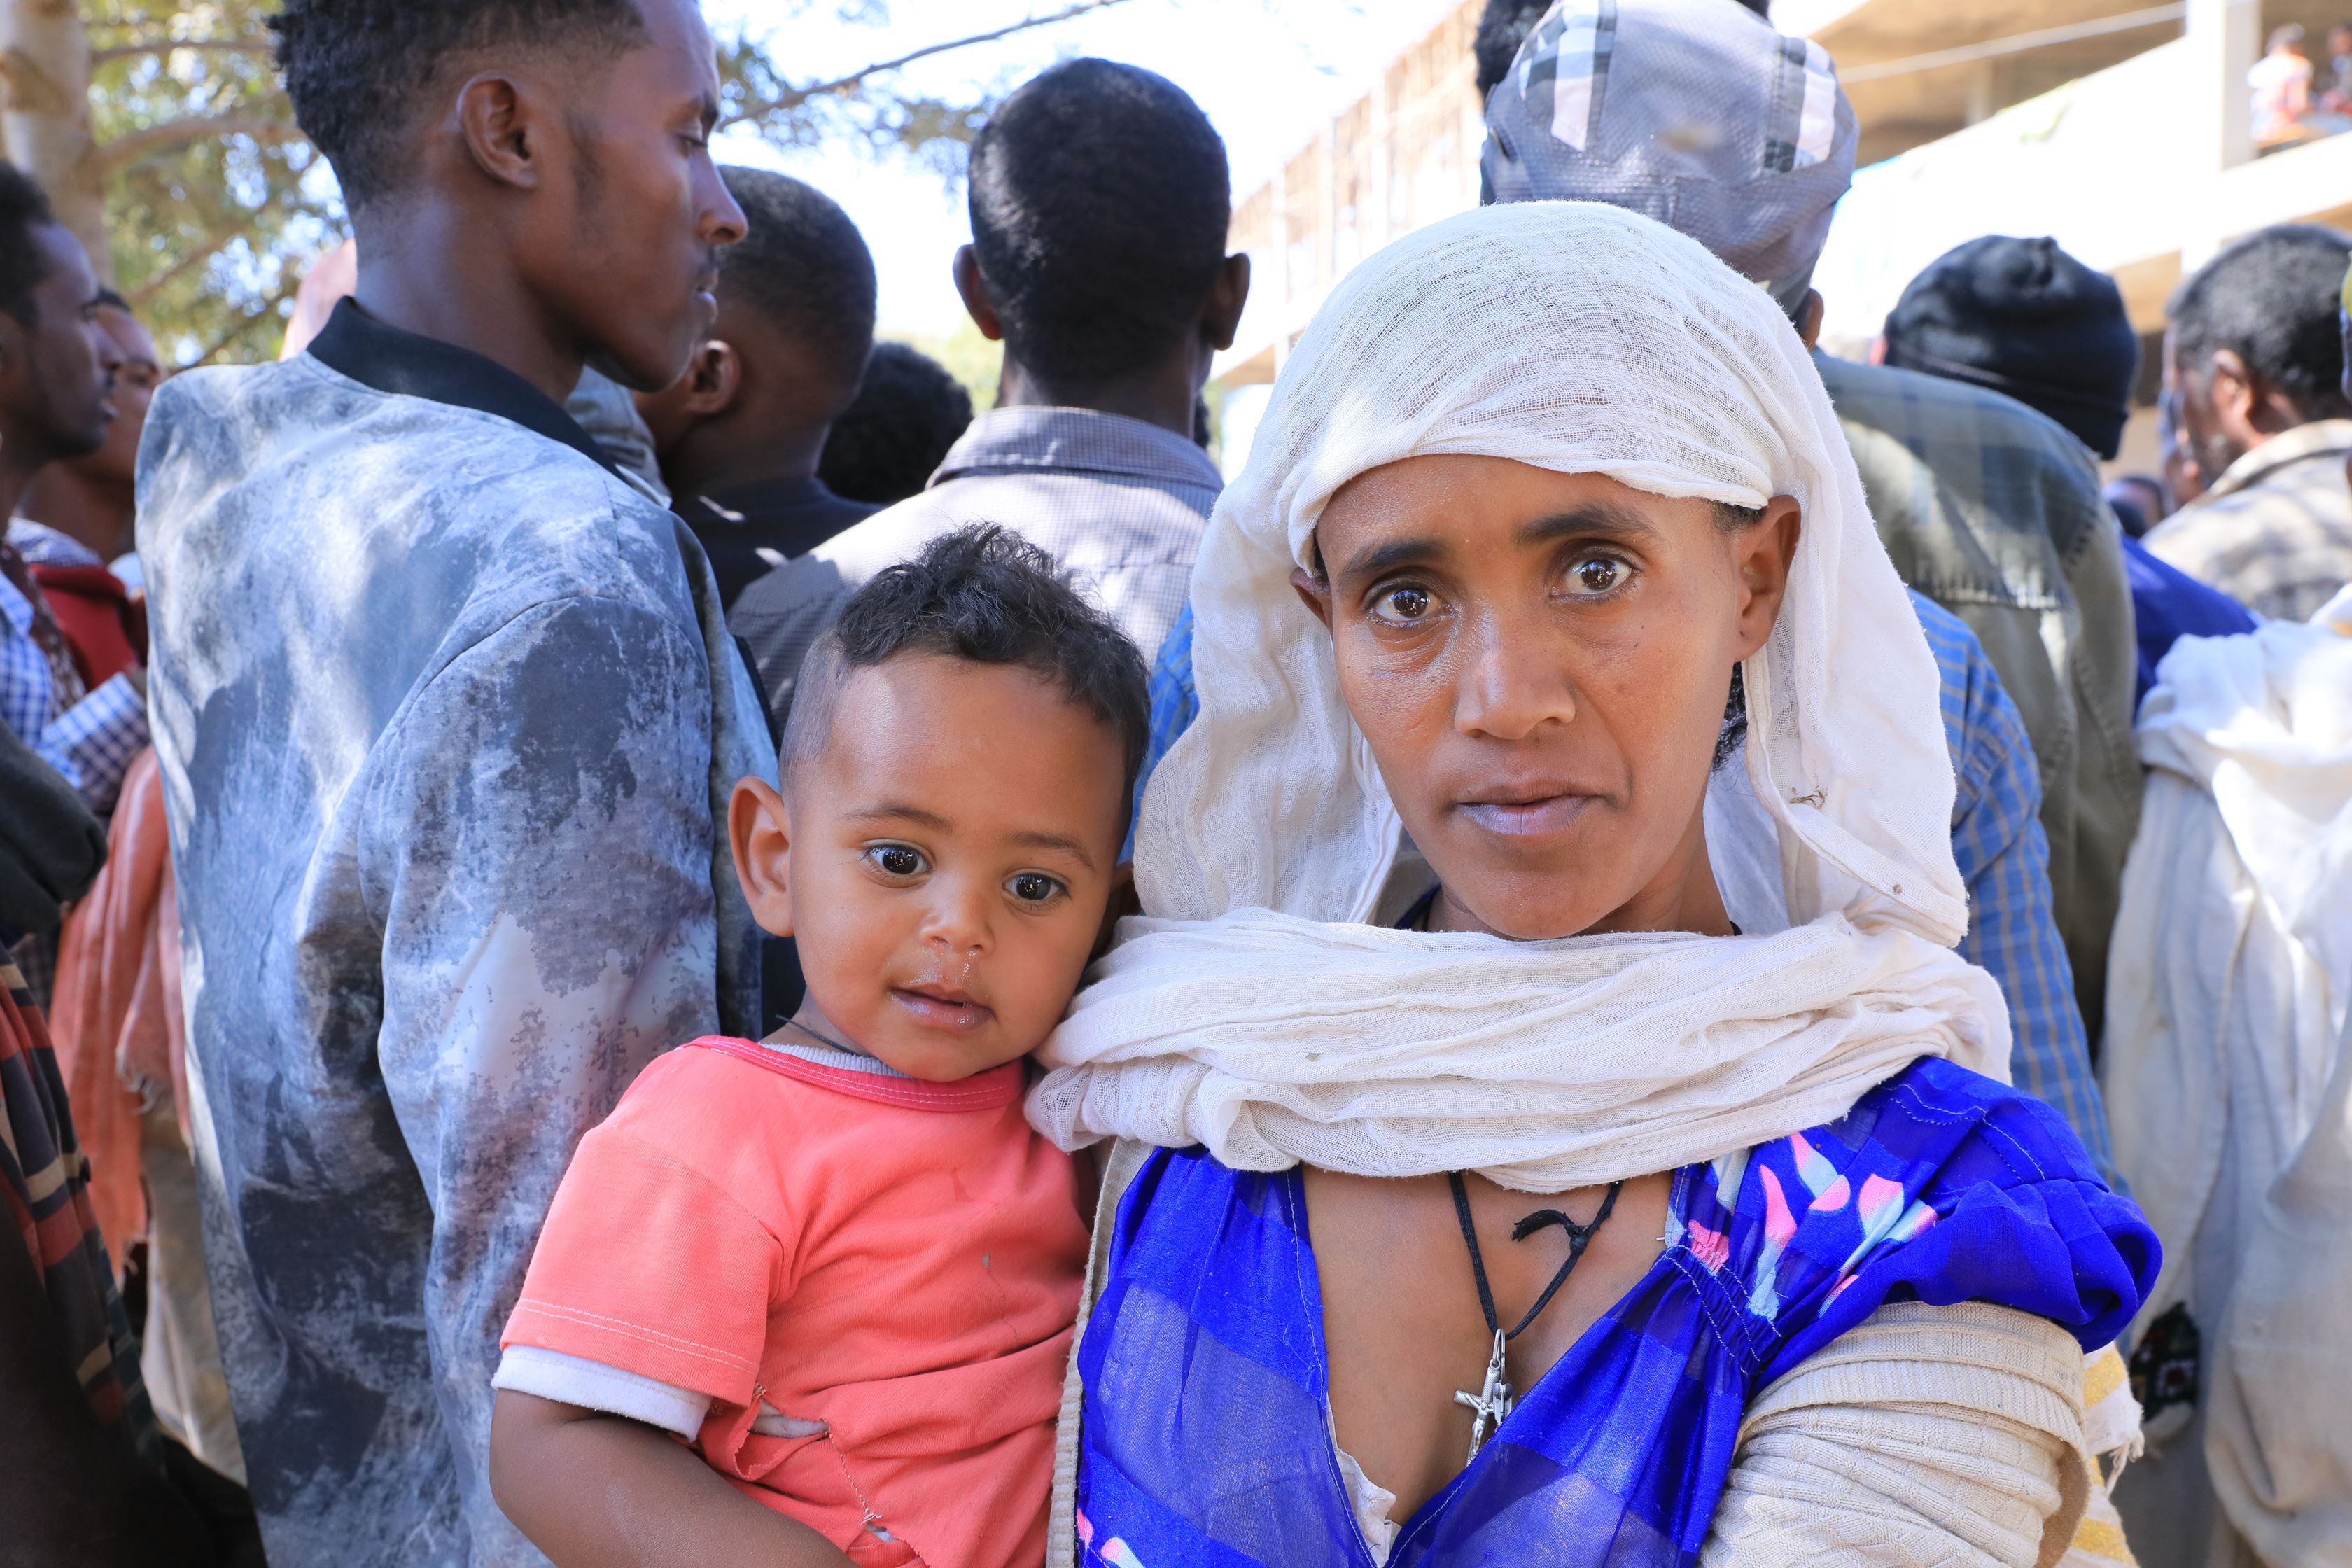 Madre en Etiopia con su hijo en brazos, al fondo un grupo de personas